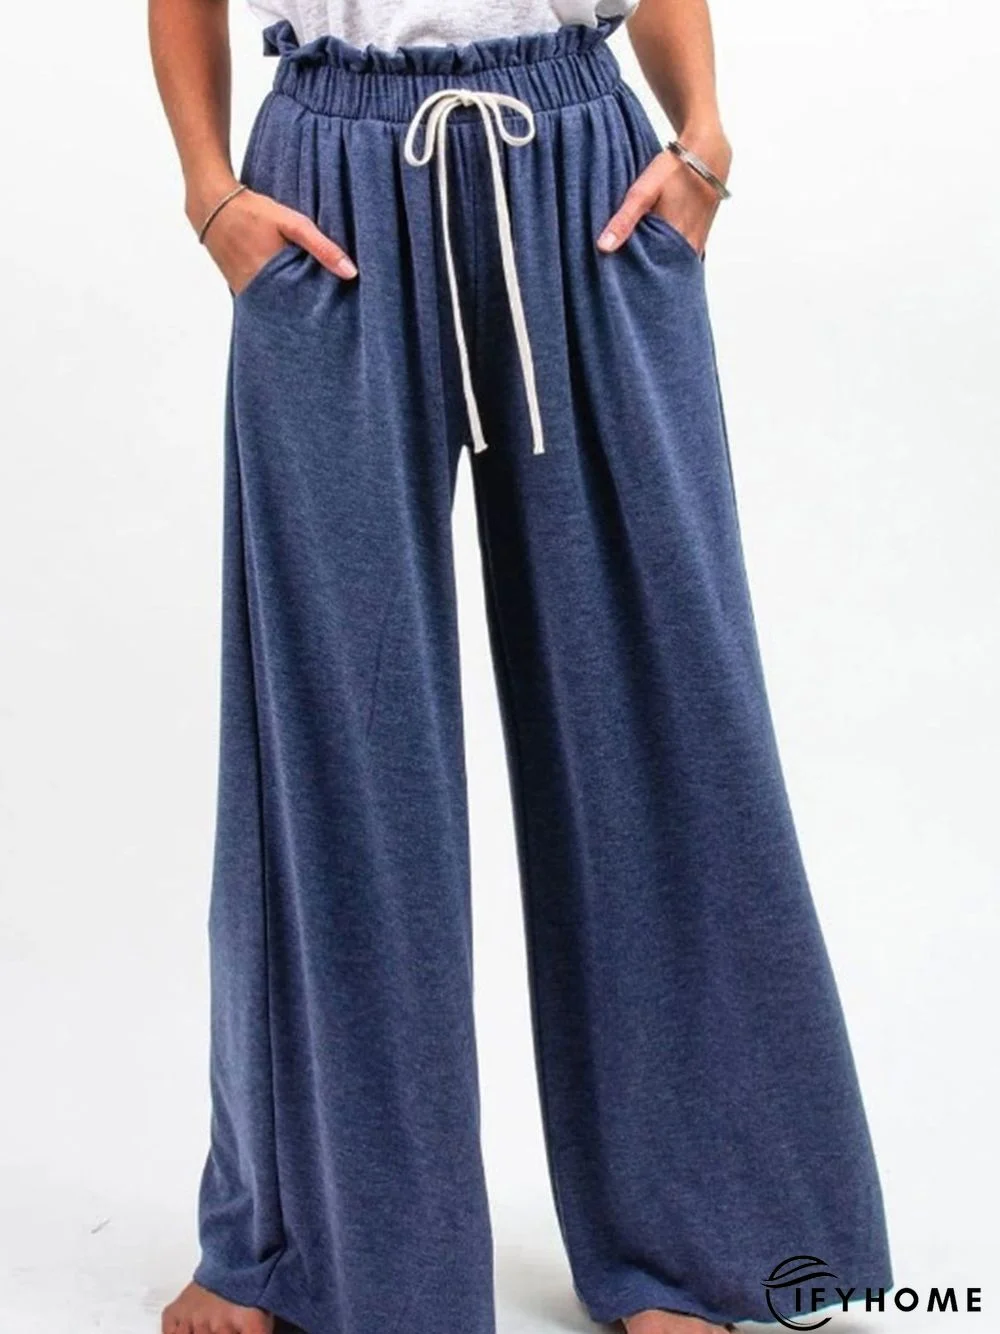 Plain Cotton Drawstring Pants | IFYHOME